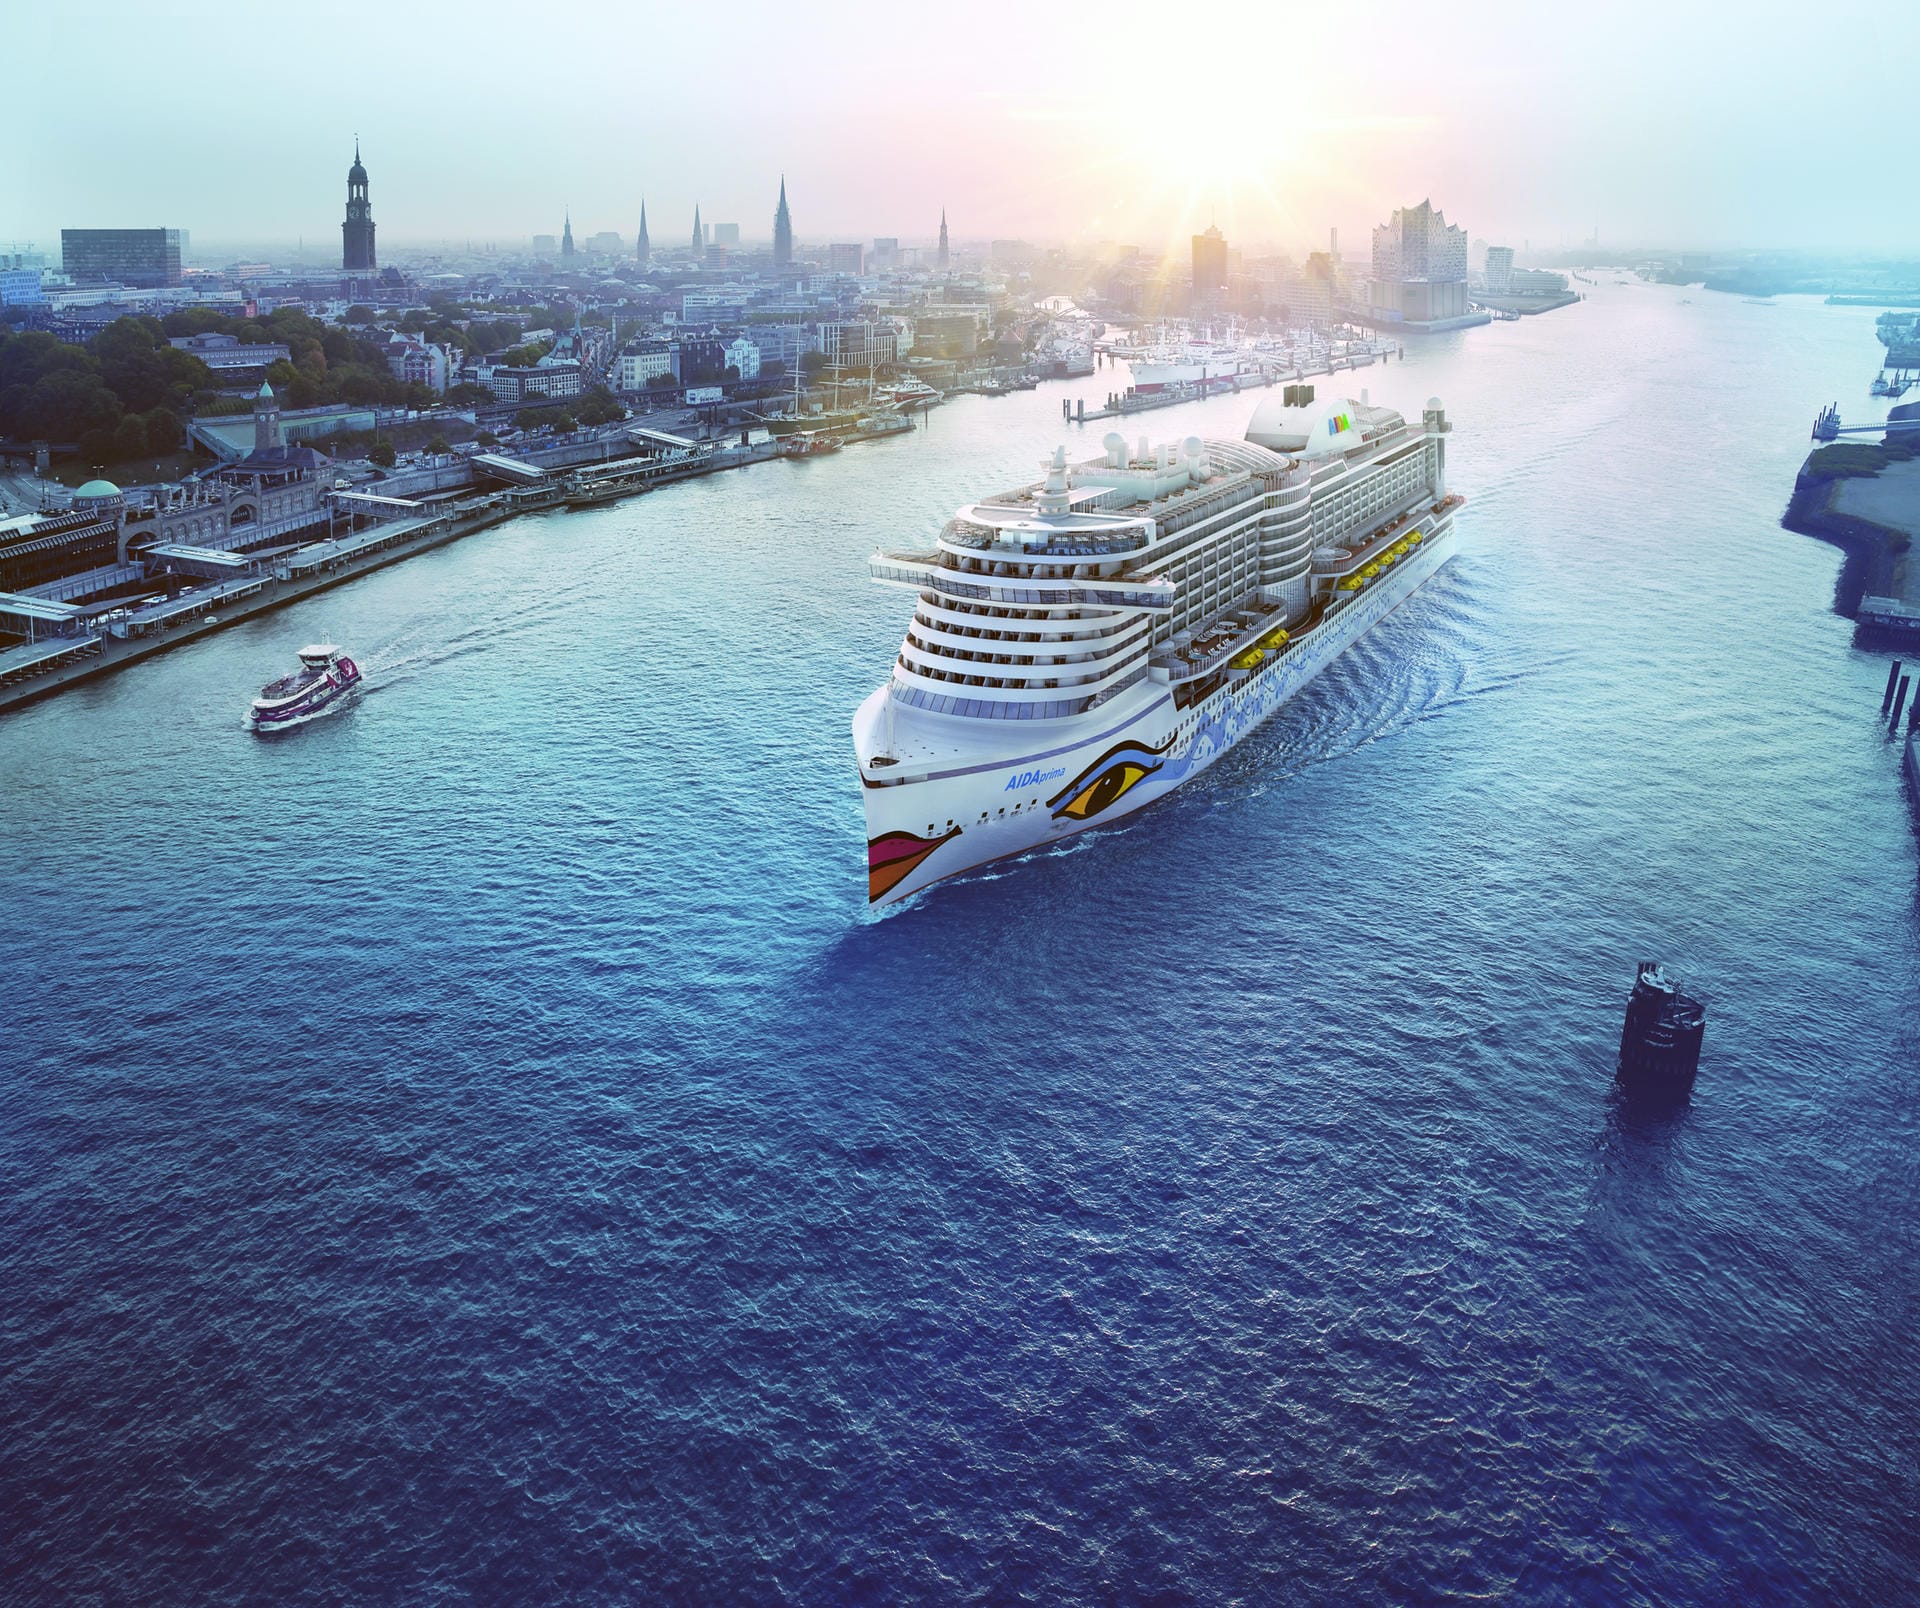 Heute ist die Reederei der größte Player auf dem deutschen Markt. Die neueste Aida-Generation "Aida Prima" soll nach mehreren Verzögerungen ab Frühjahr 2016 ganzjährig ab Hamburg fahren.